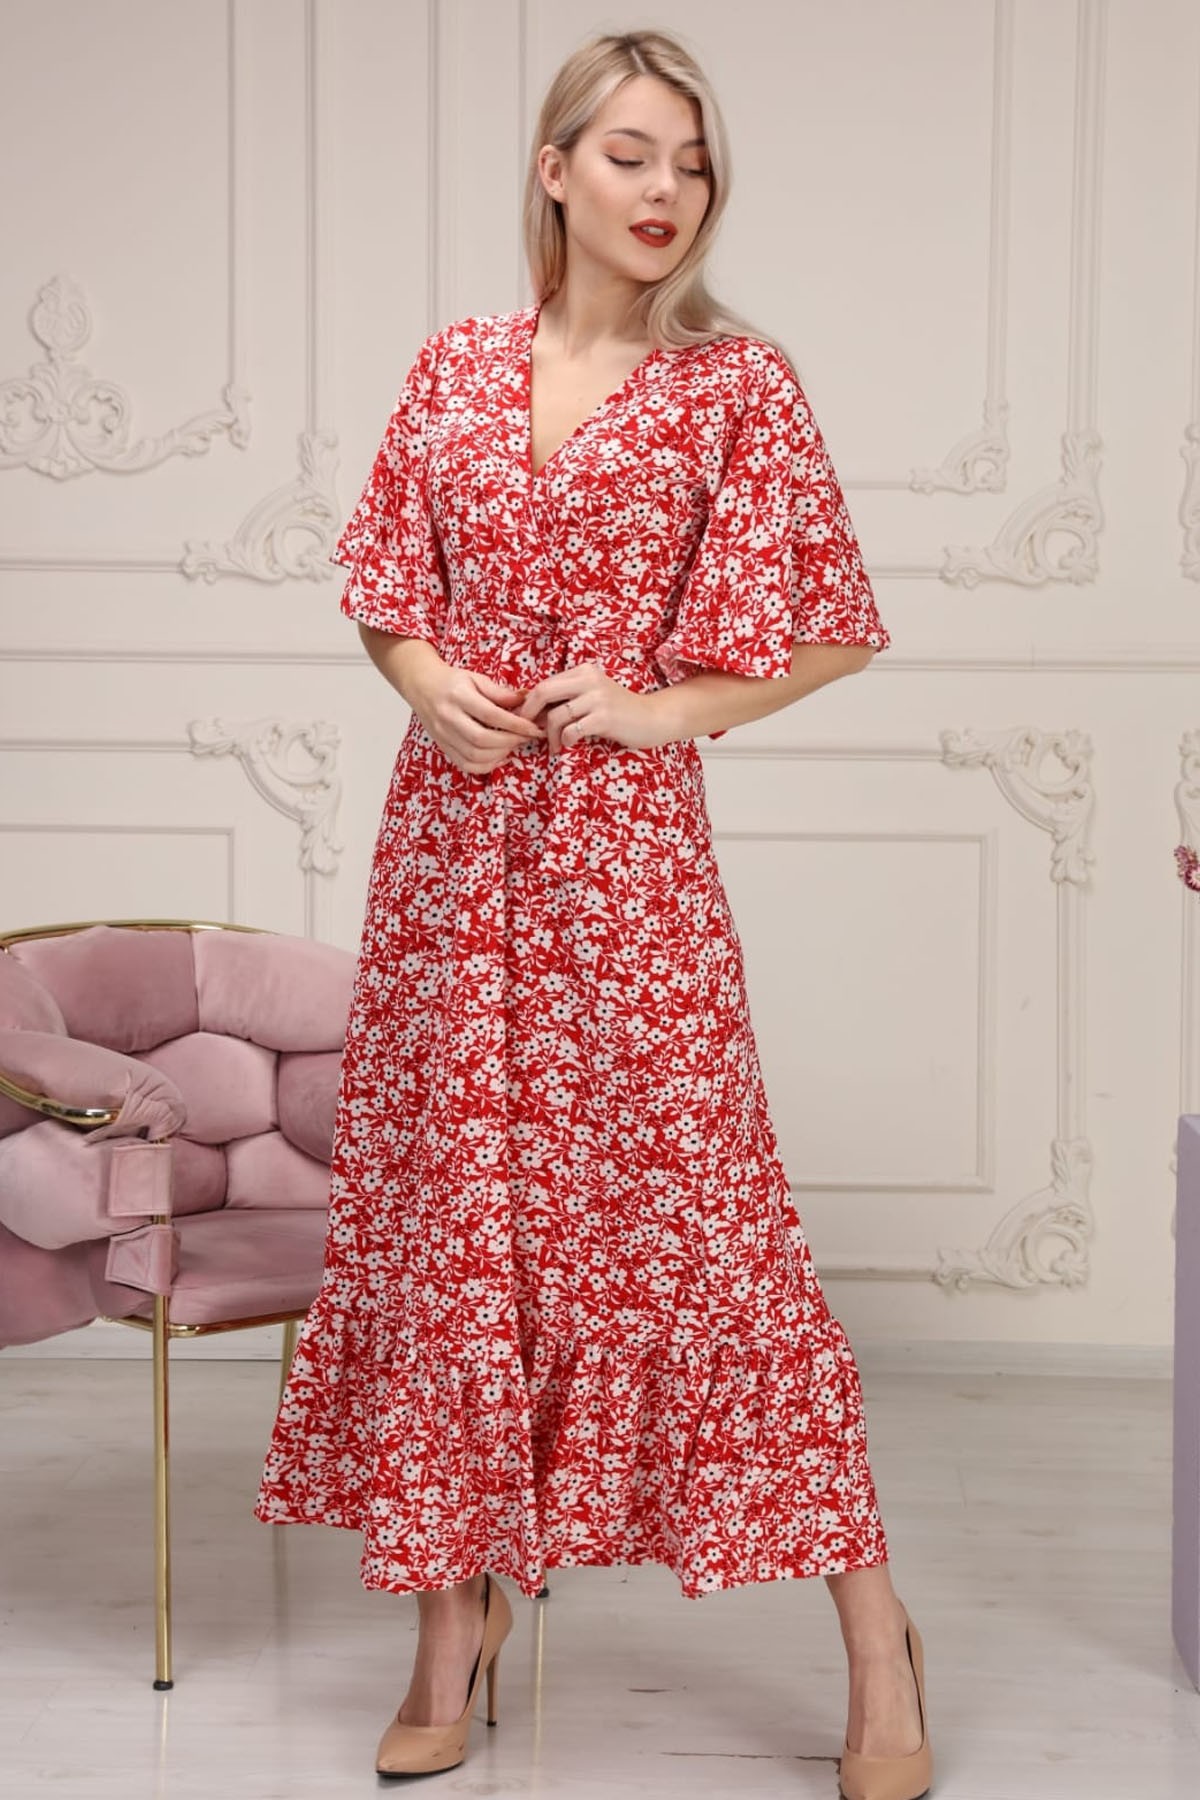 Valon etek krep elbise-Kırmızı Çiçek